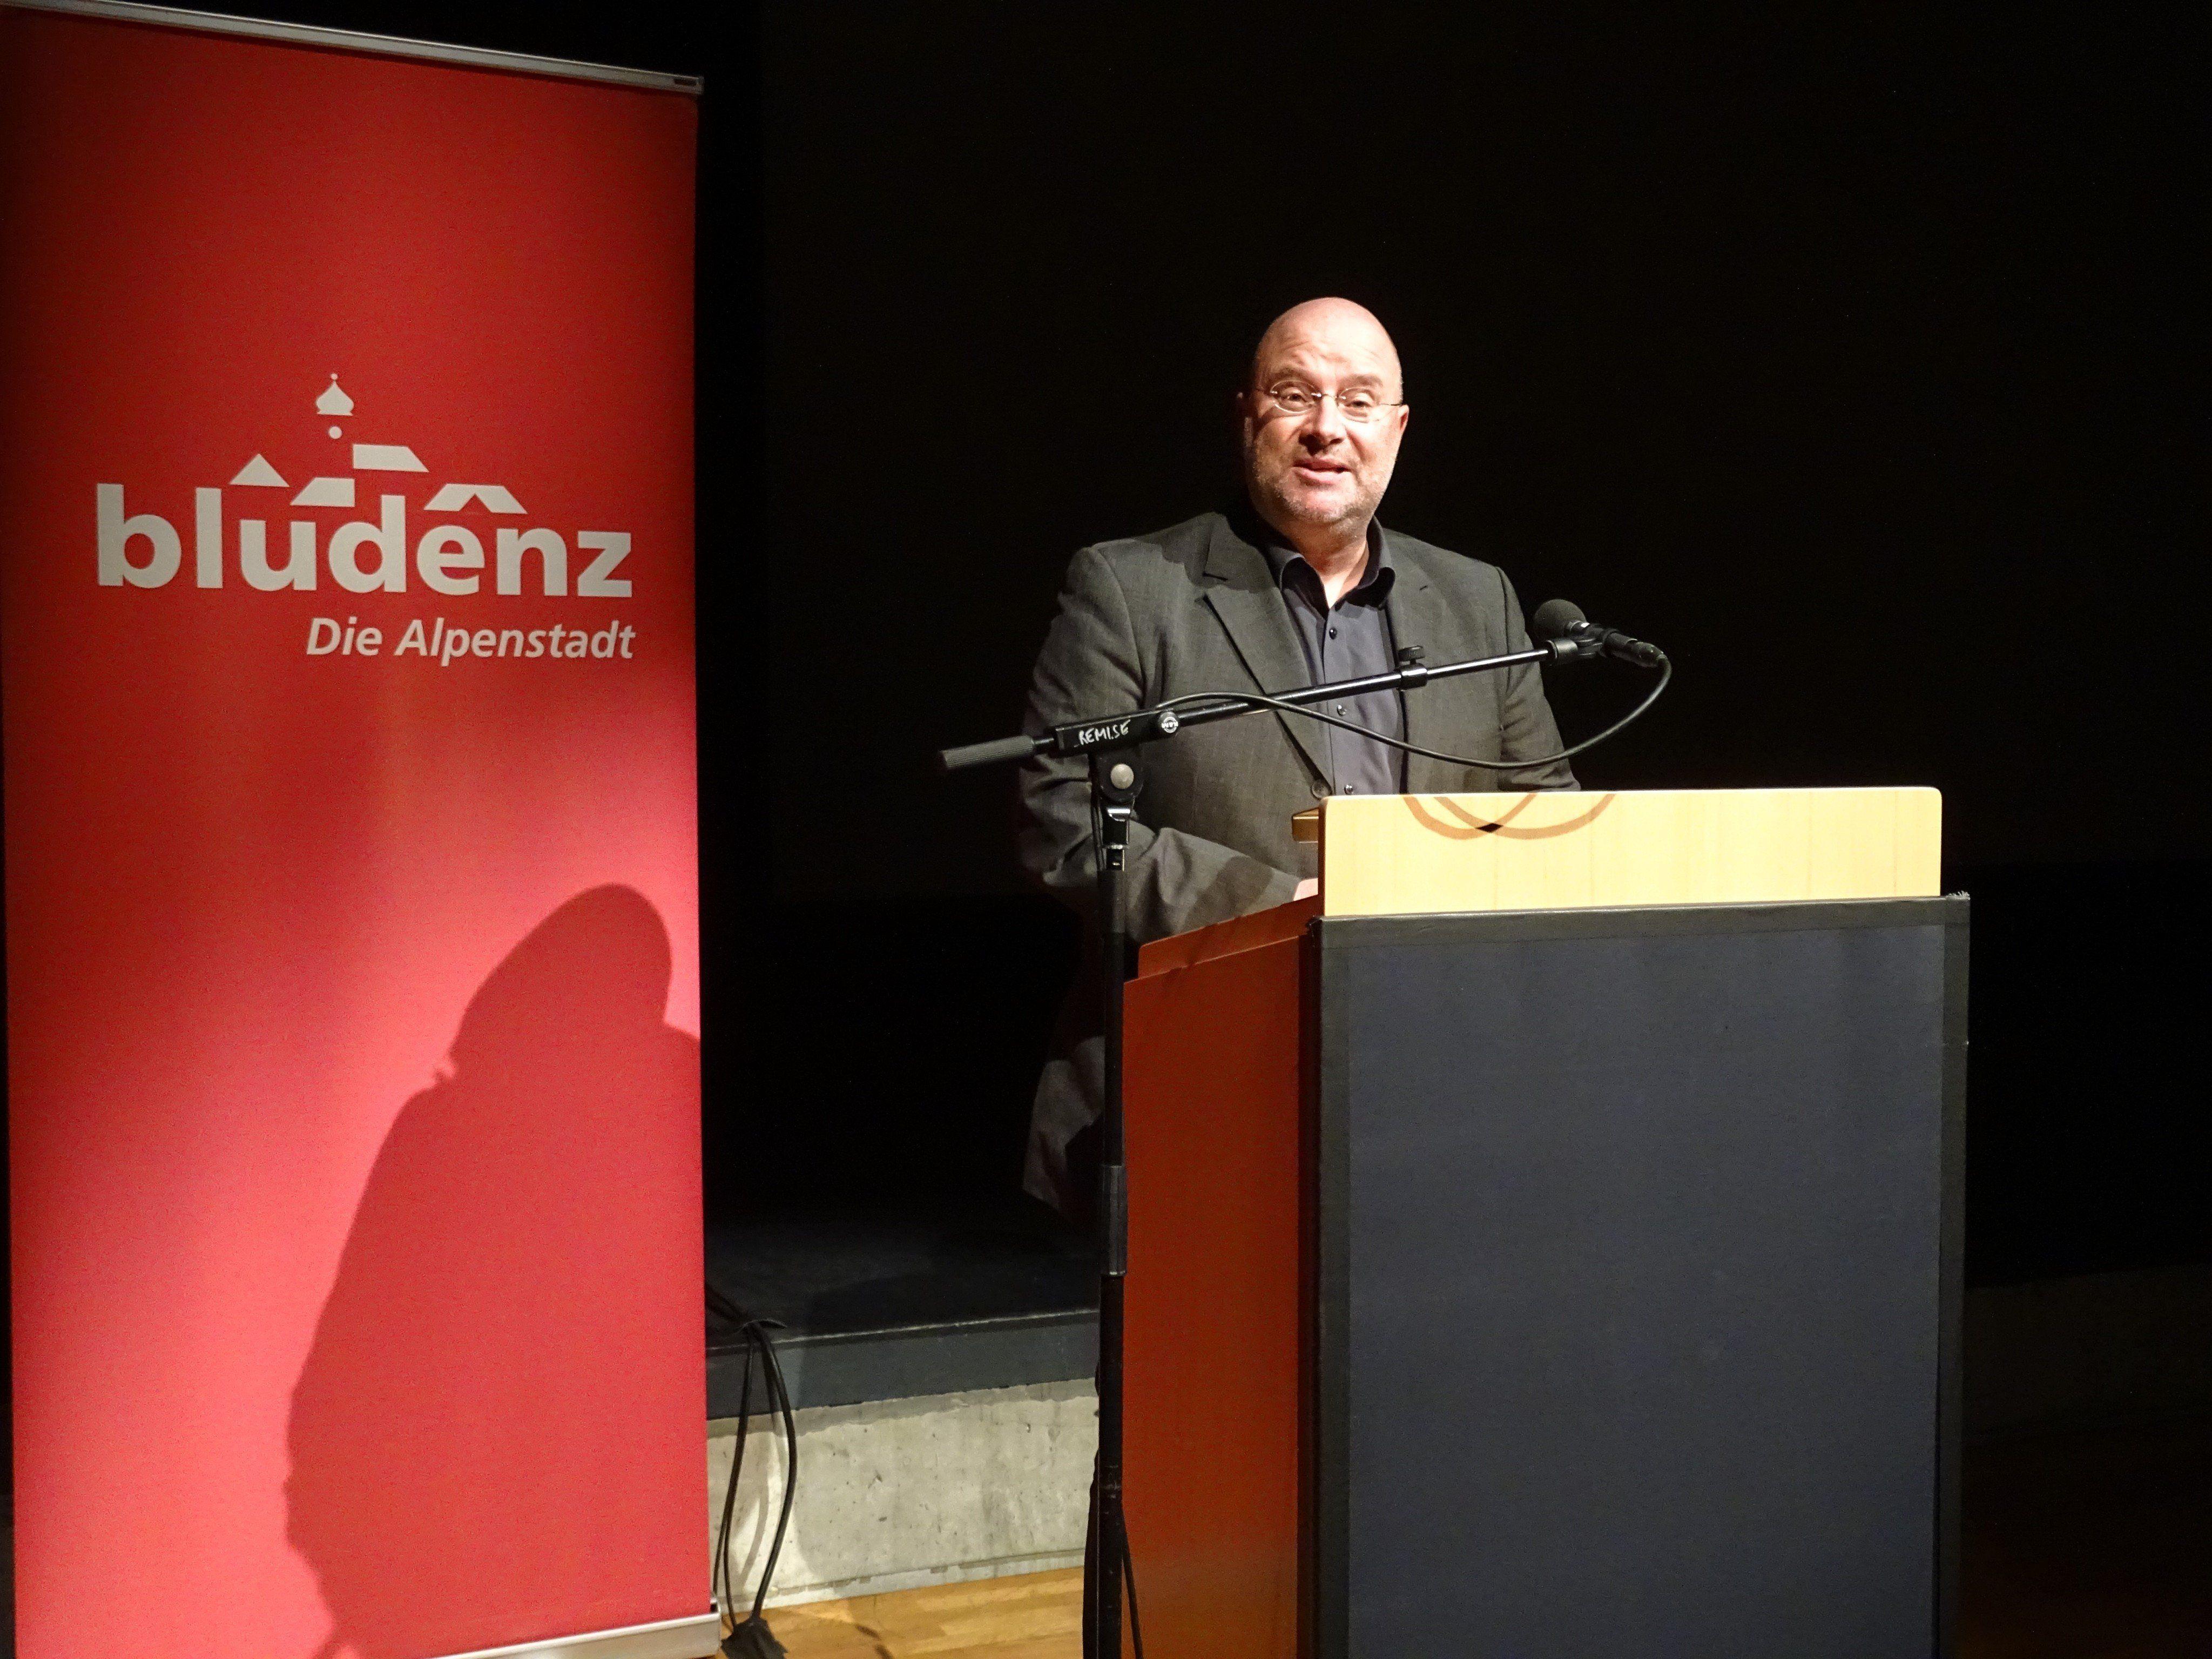 Andreas Rudigier war stolz, die Ergbnisse der langjährige Arbeit am zweiten Band der Bludenzer Stadtgeschichte, nun endlich der Öffentlichkeit präsentieren zu können.